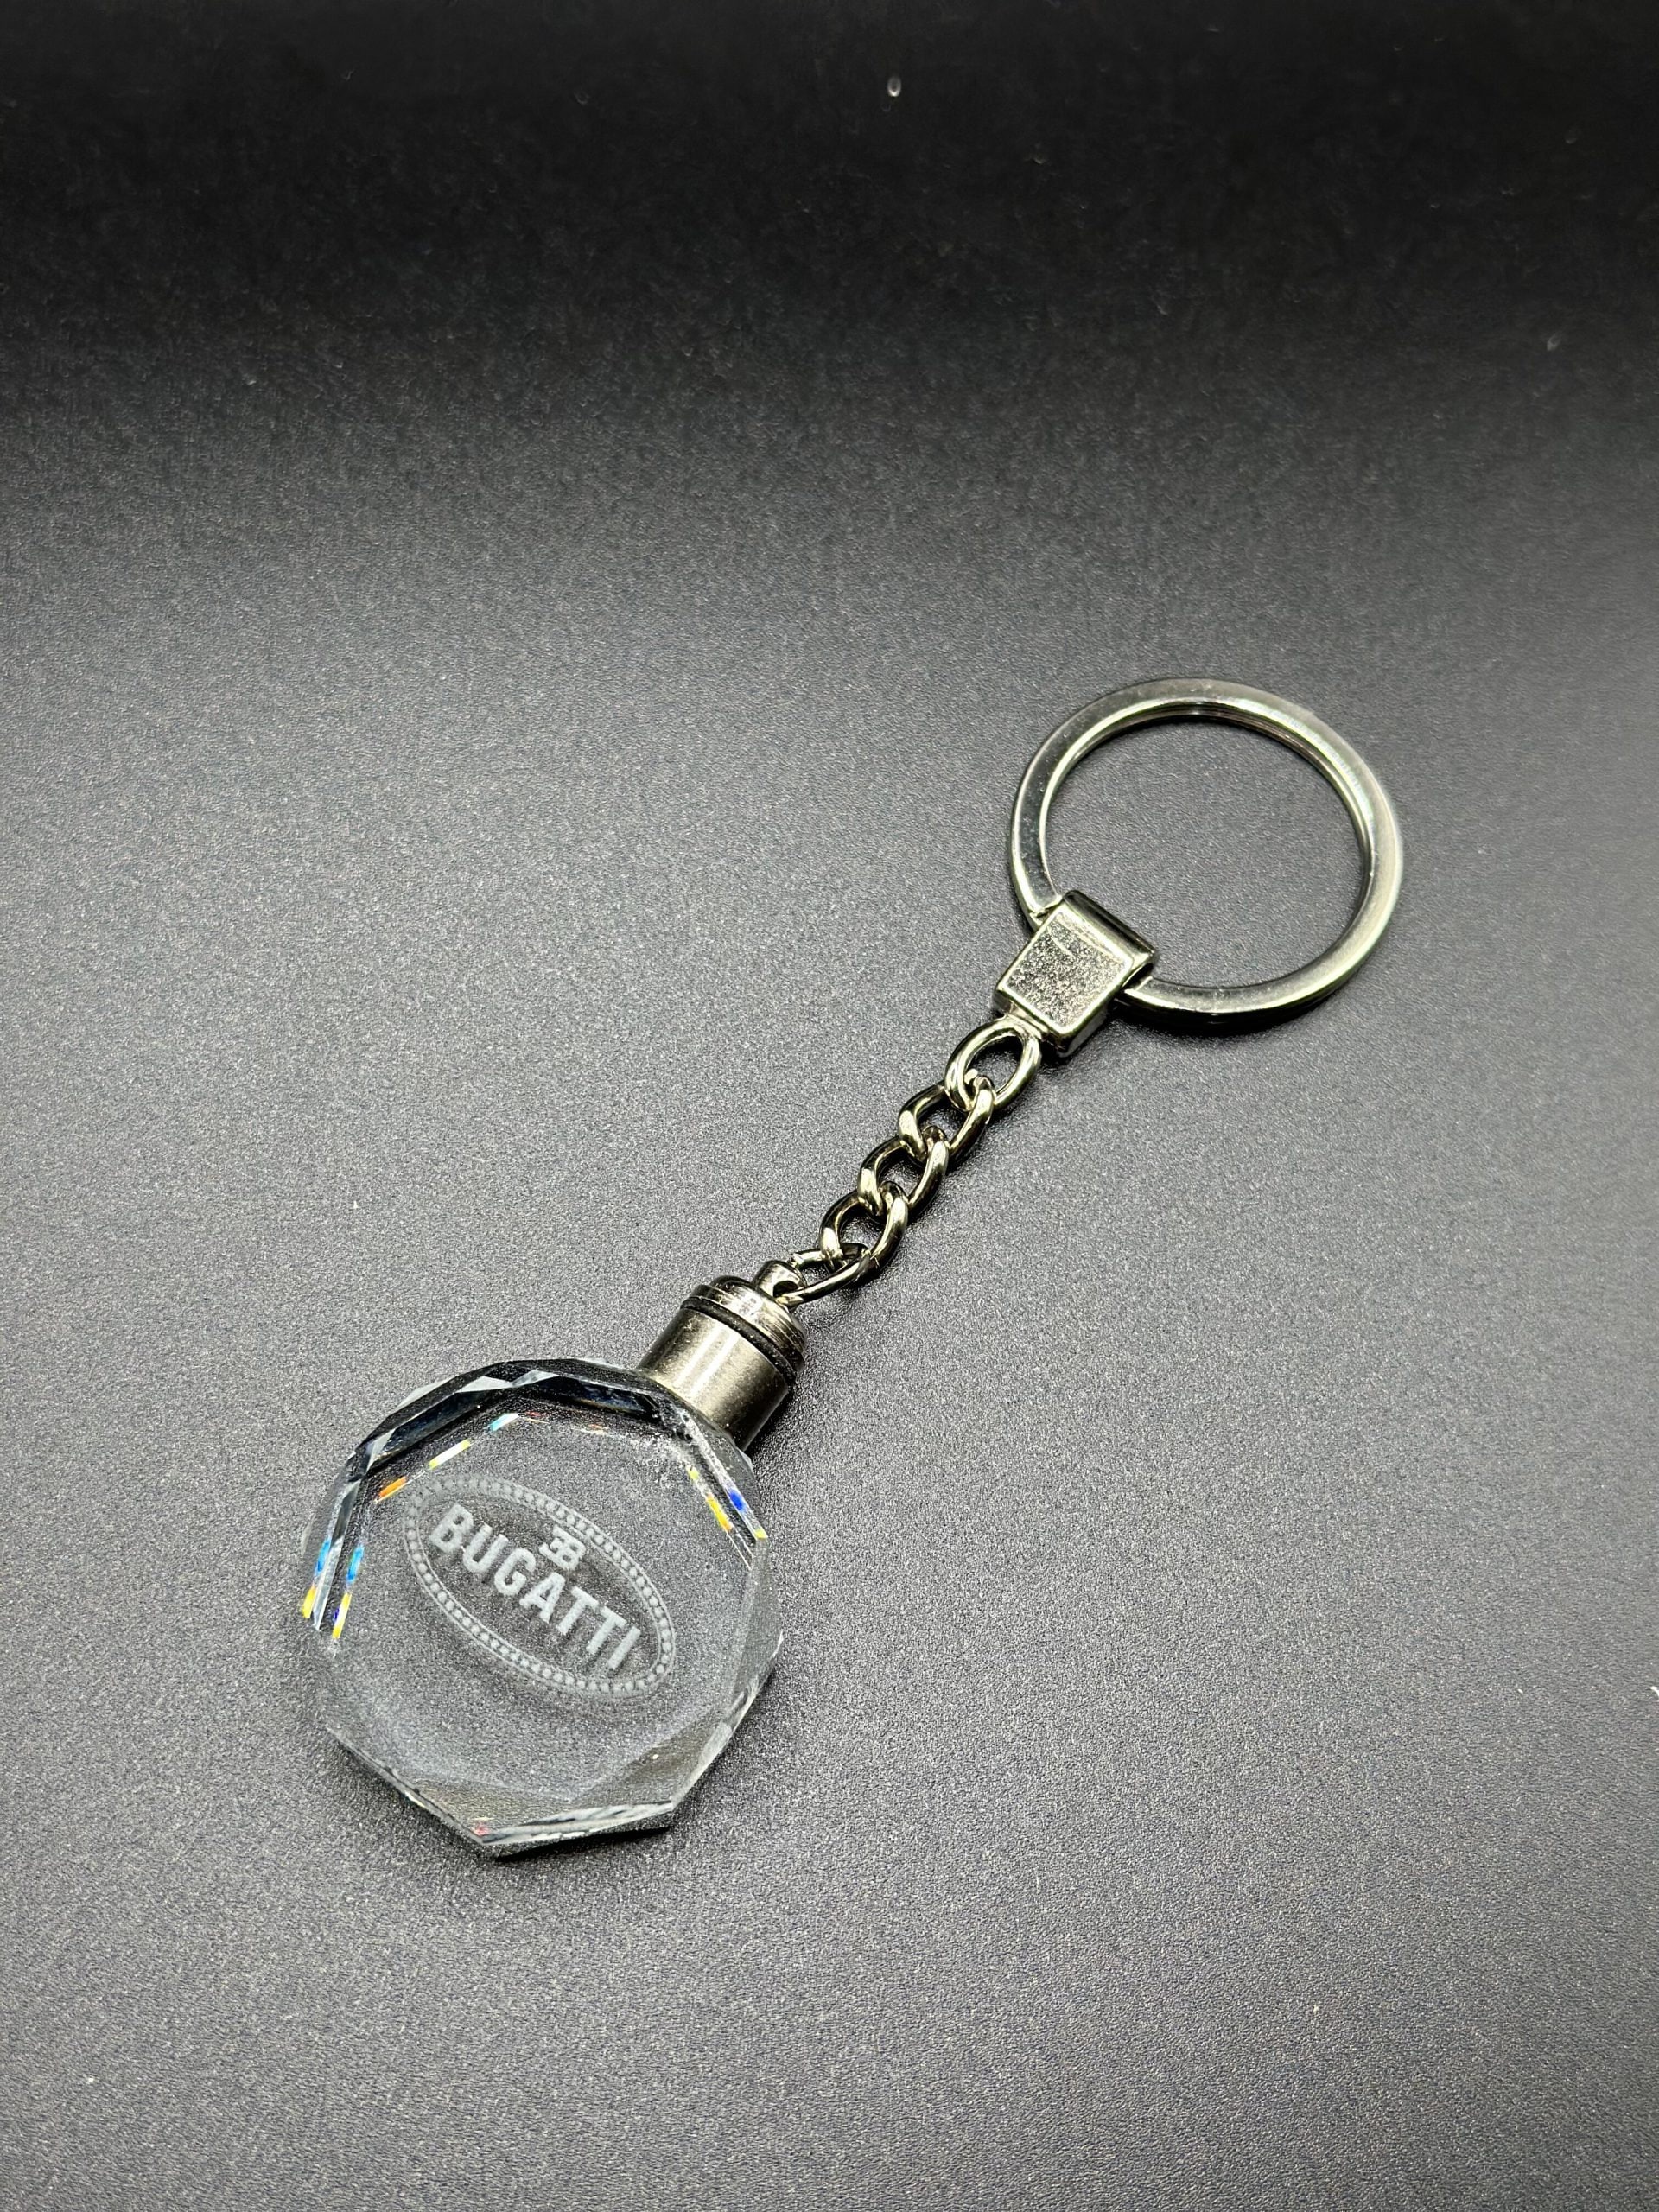 Bugatti sterling silver keychain